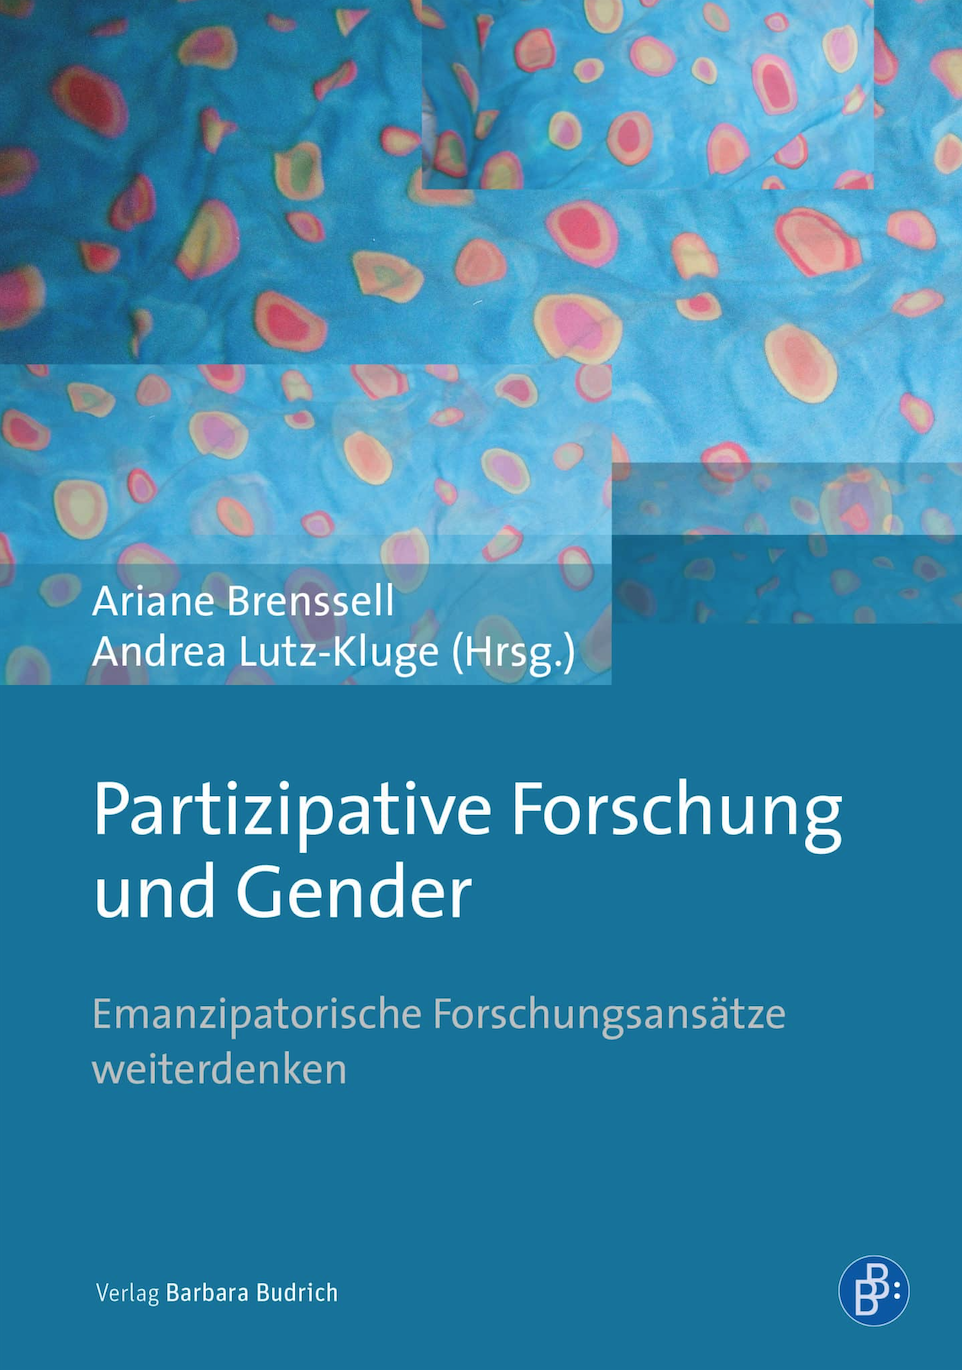 2020_Partizipative-Forschung-und-Gender